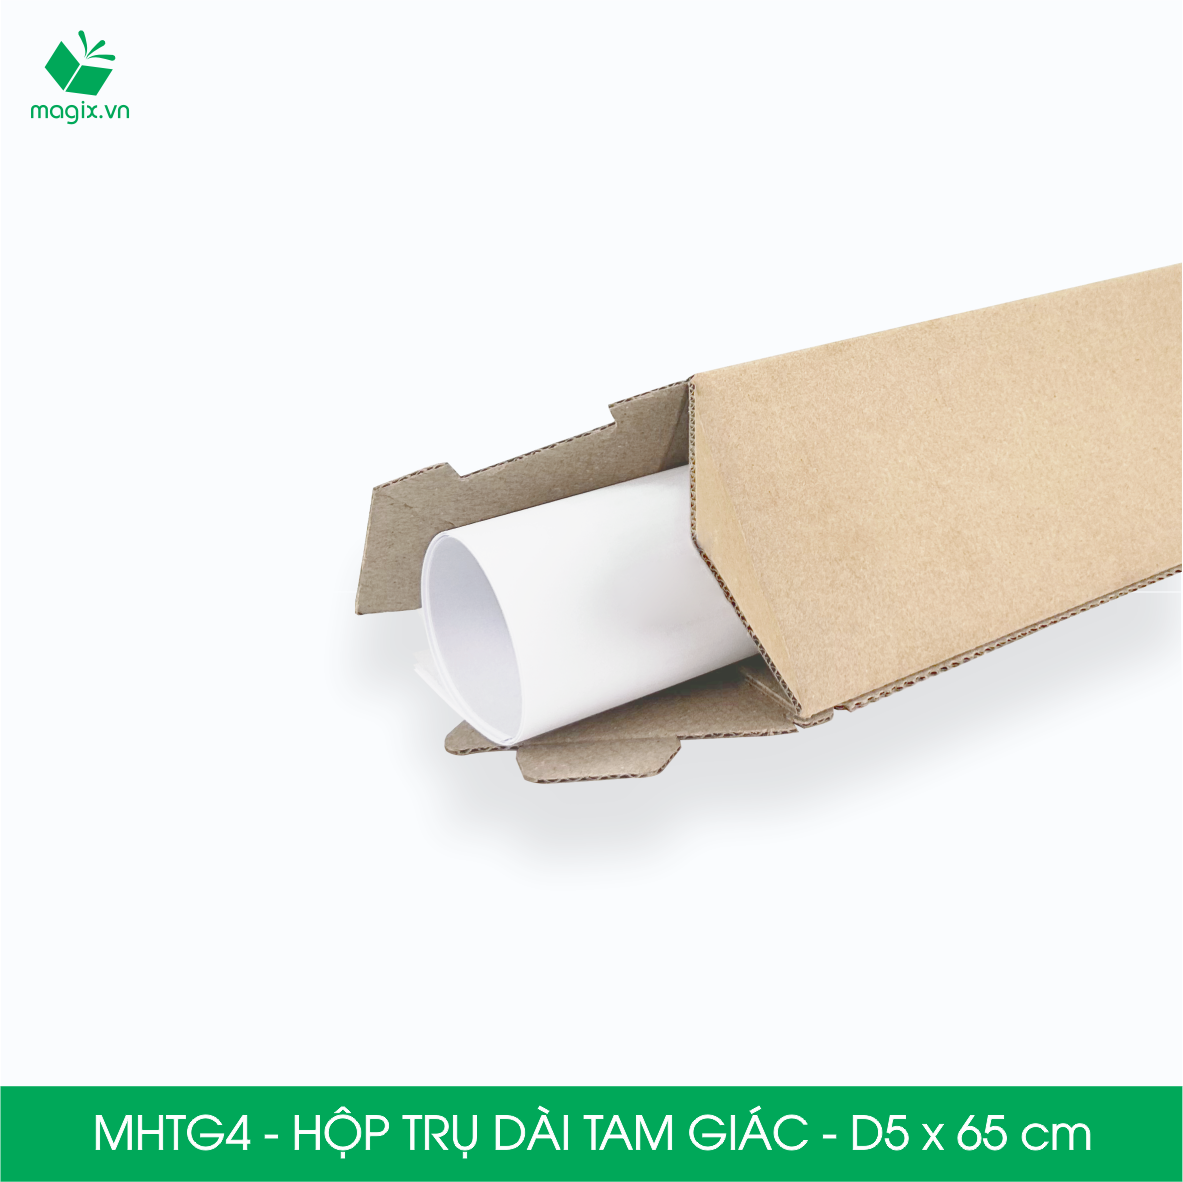 MHTG4 - D5x65 cm - 100 Hộp trụ dài tam giác thay thế ống giấy - Hộp carton đóng gói hàng